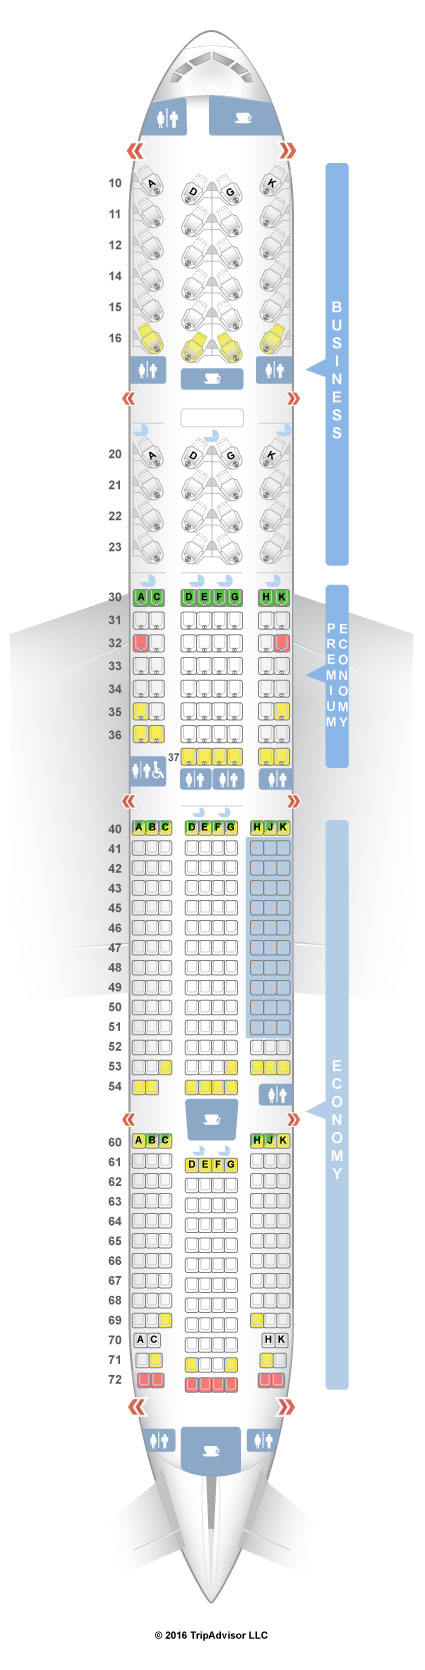 air china seat selection